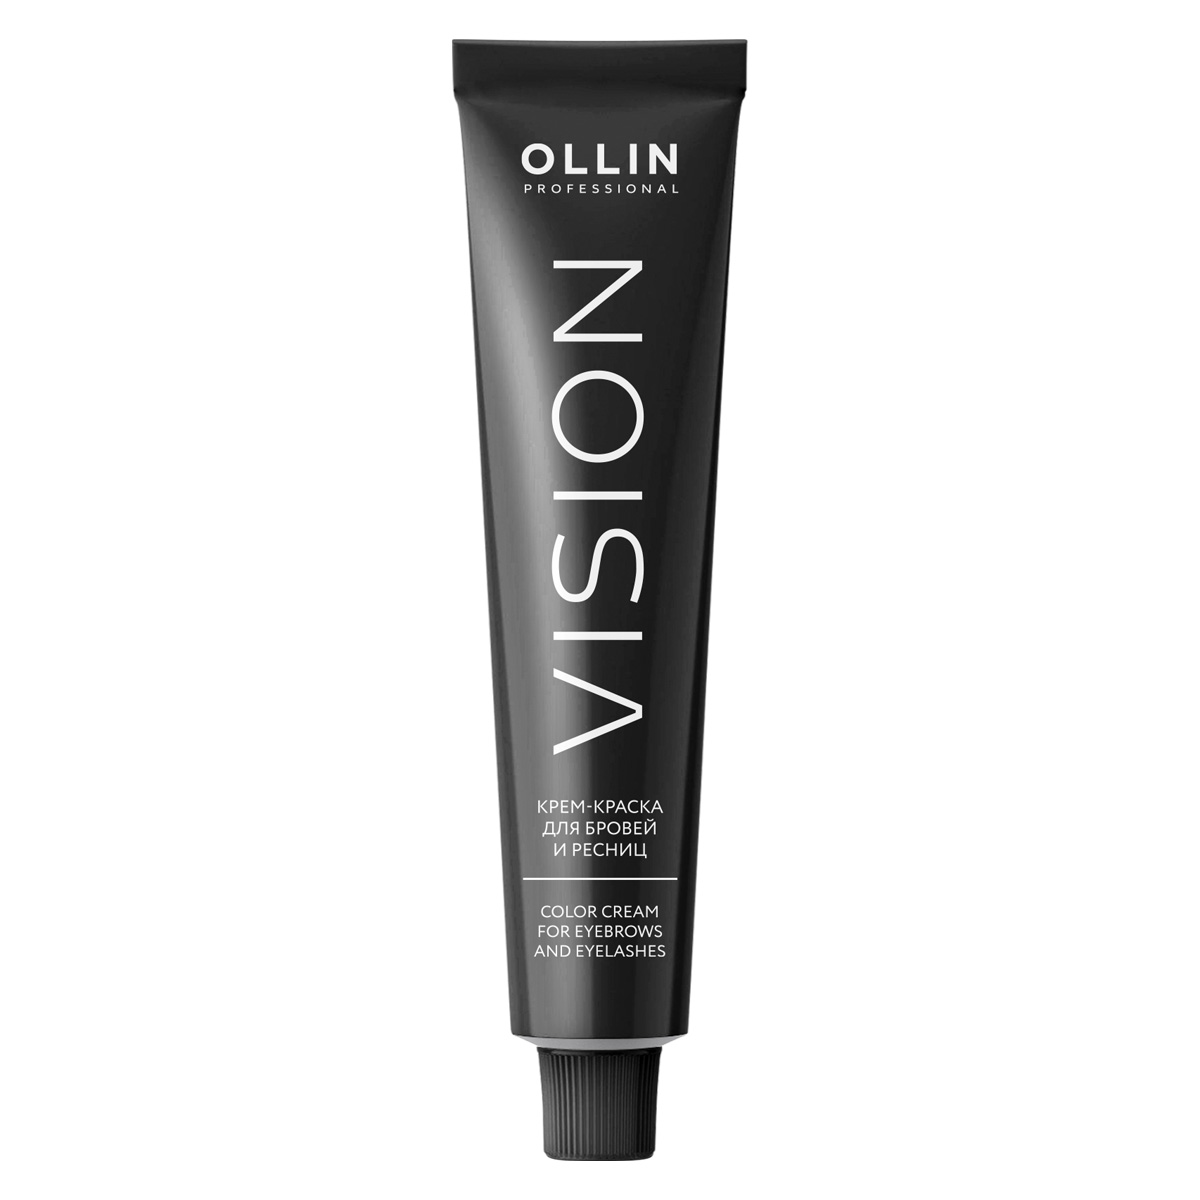 Ollin Professional Крем-краска для бровей и ресниц, 20 мл (Ollin Professional, Vision)